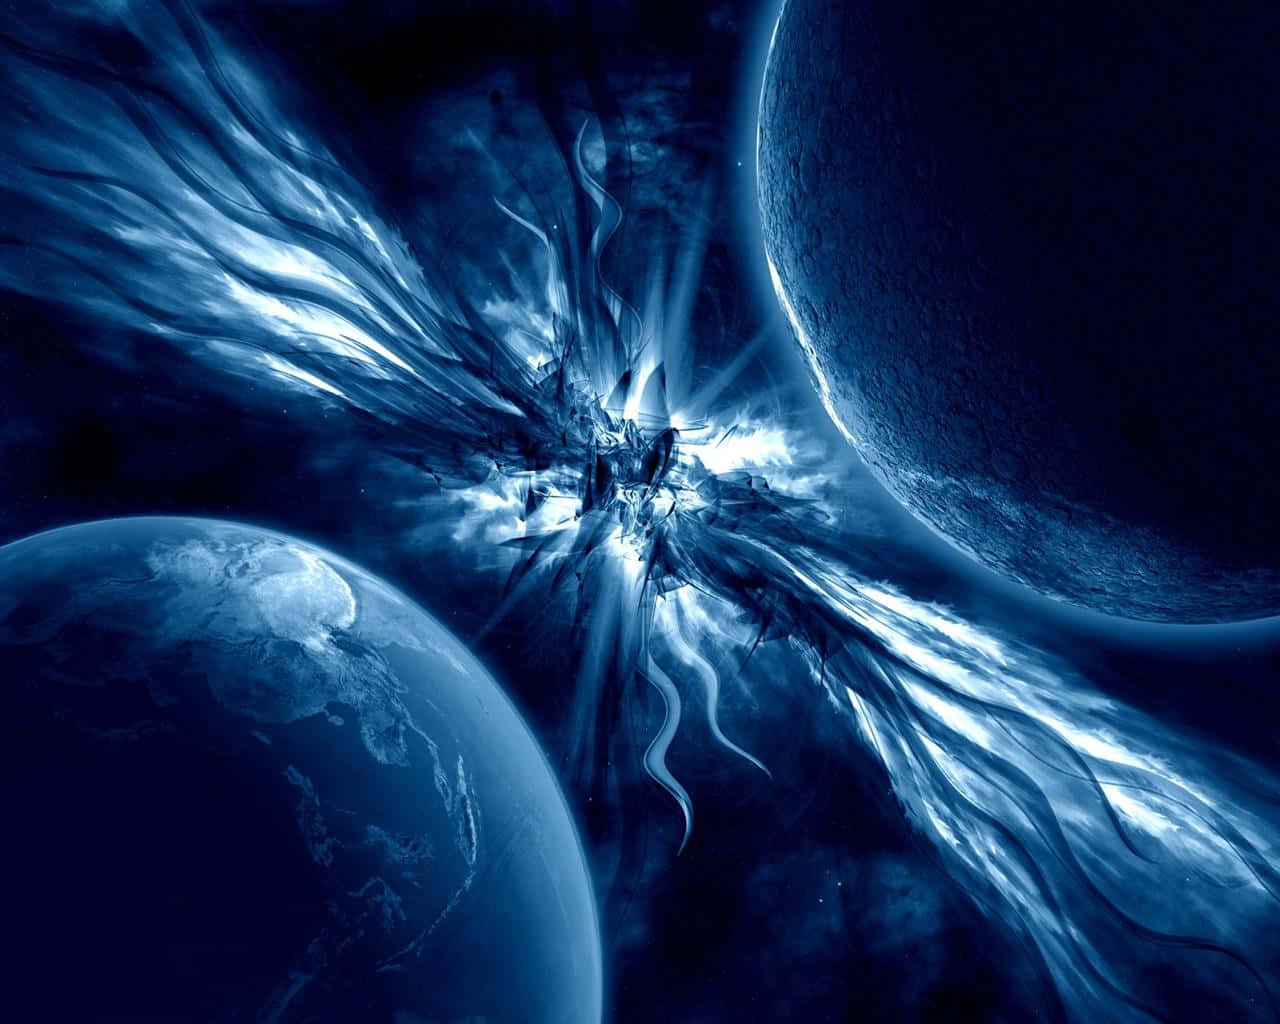 Mesmerizing Universe - Stunning Space Wallpaper